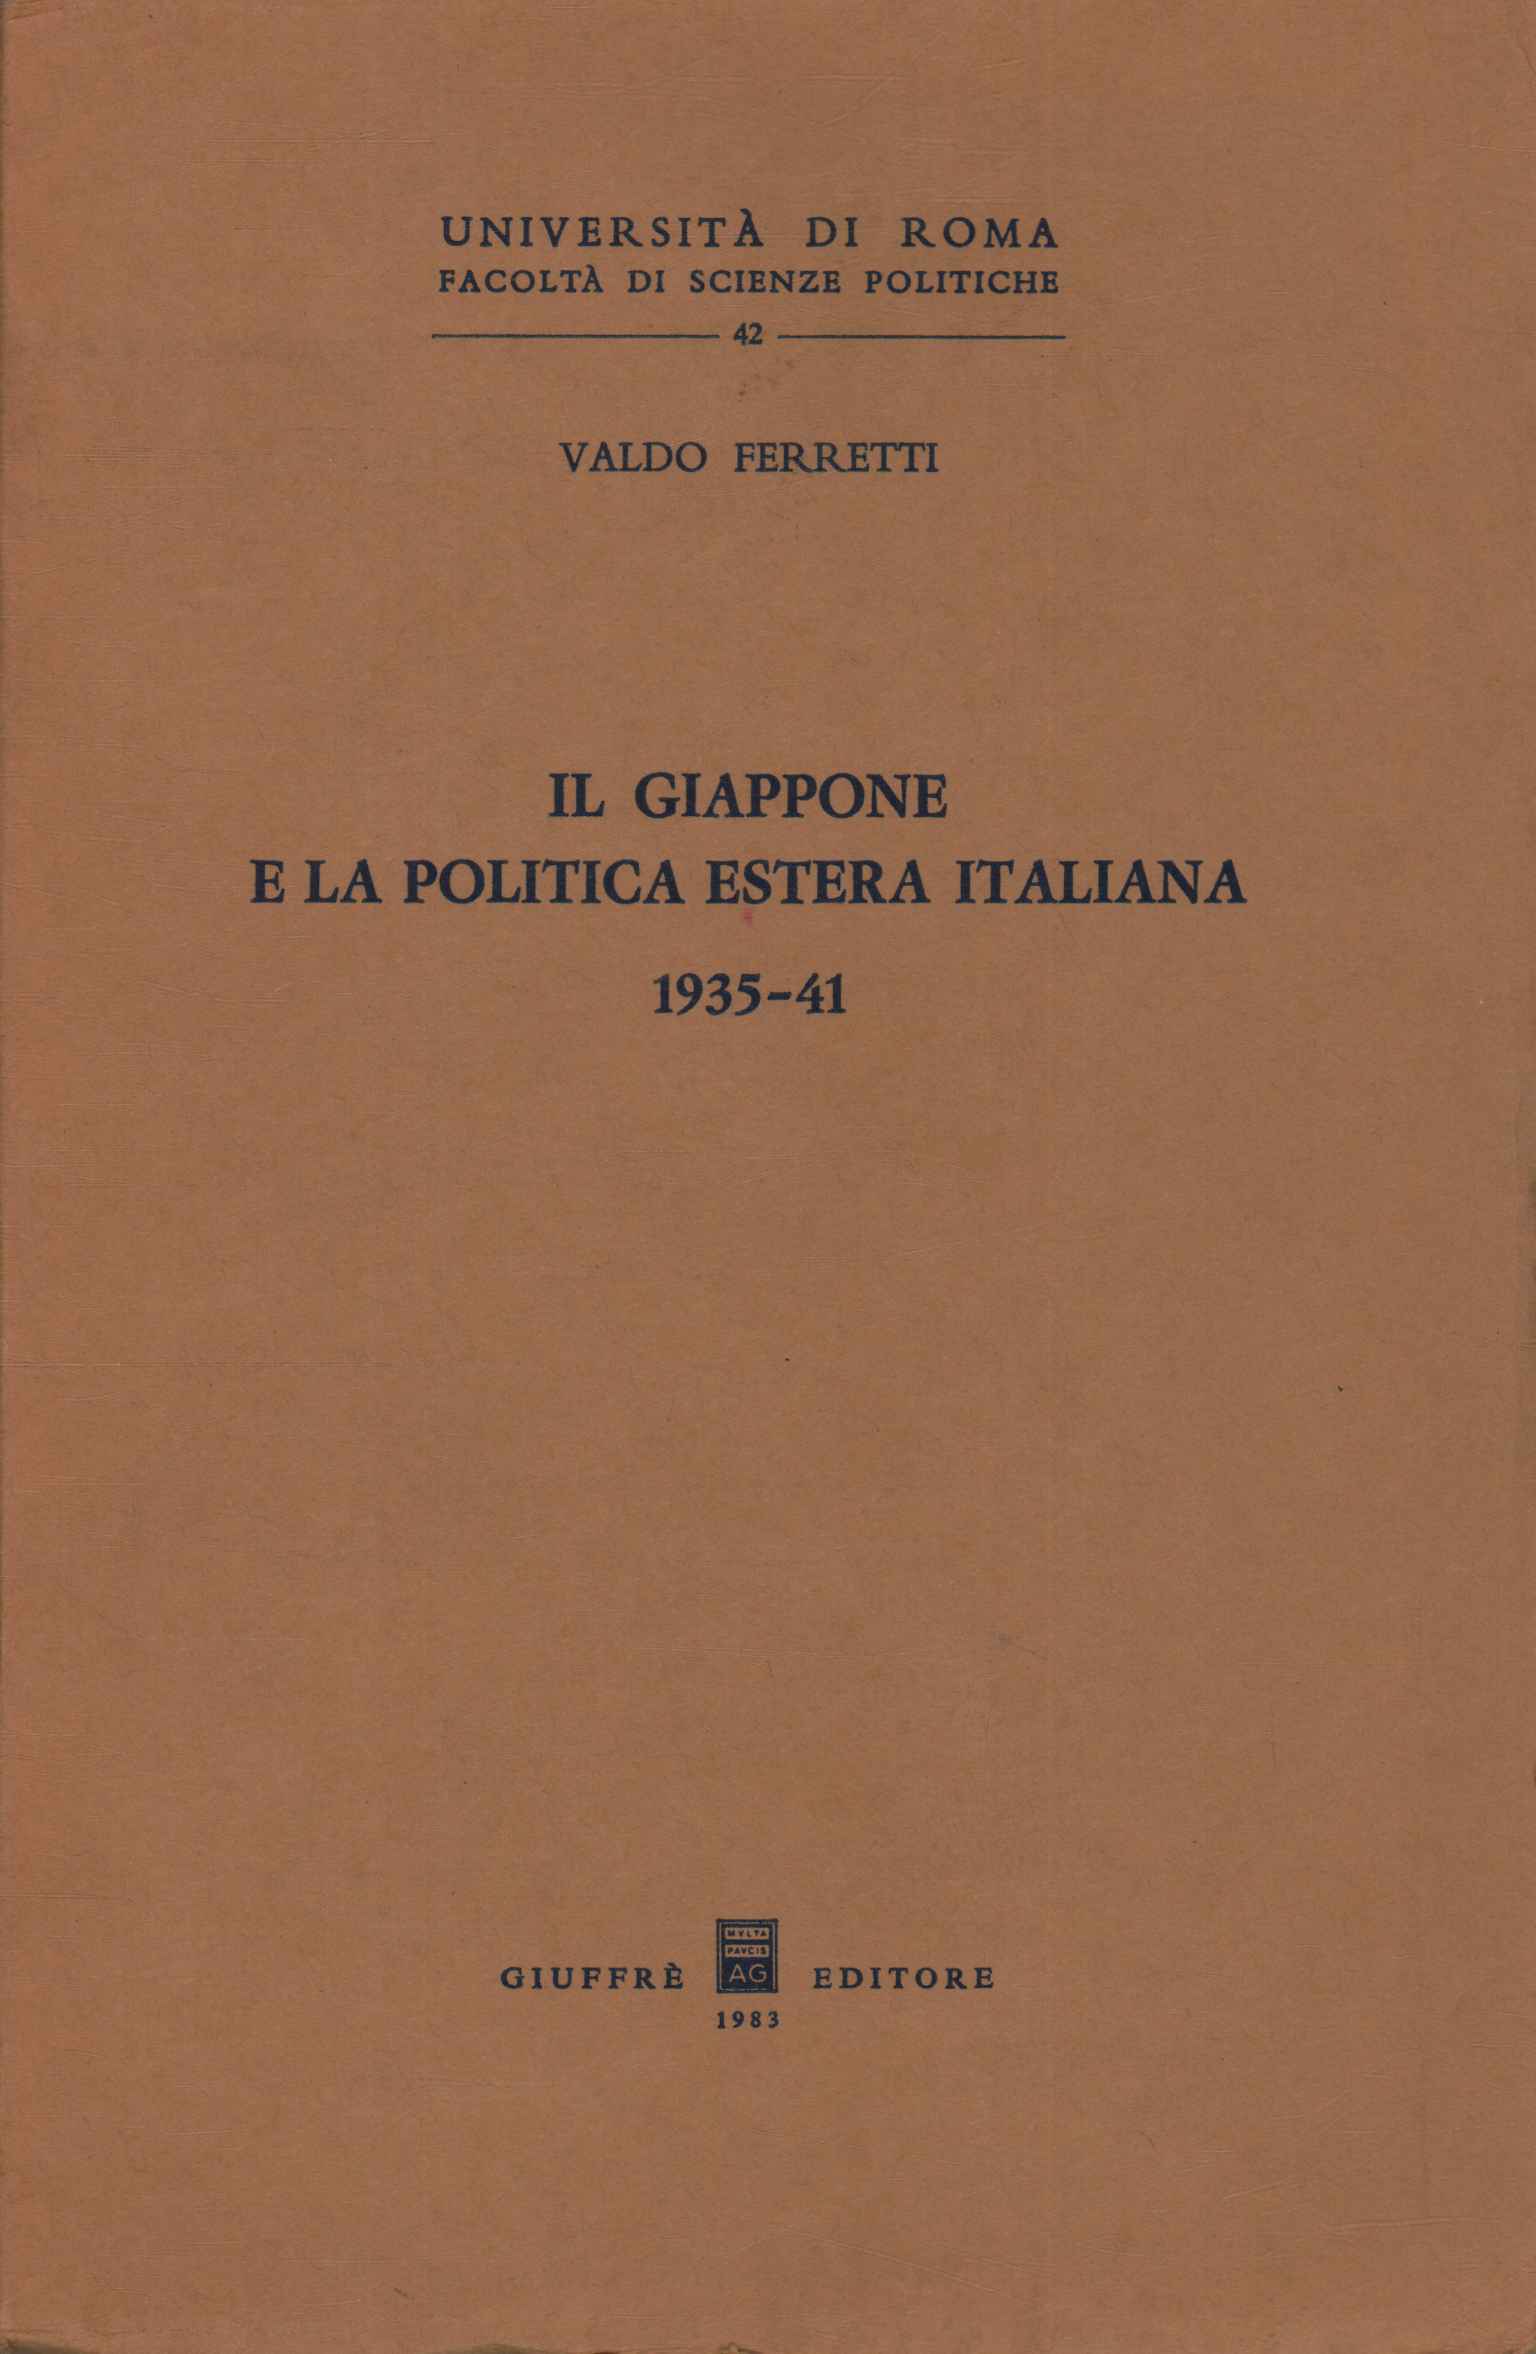 Japan und italienische Außenpolitik